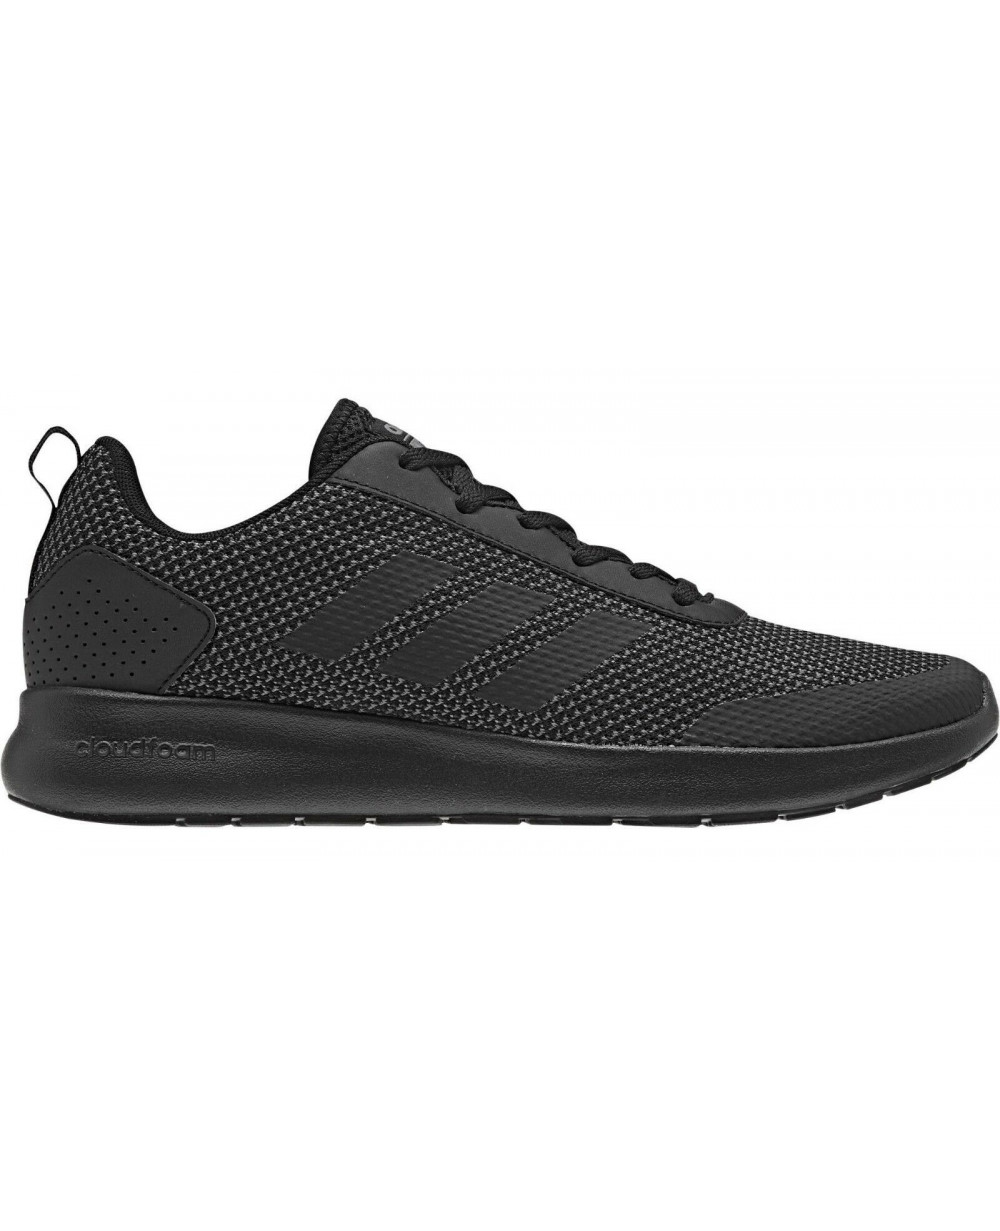 Adidas Cloudfoam Element Race Black Shoes Men DB1455 - Sports Shoes -  Footwear - Men